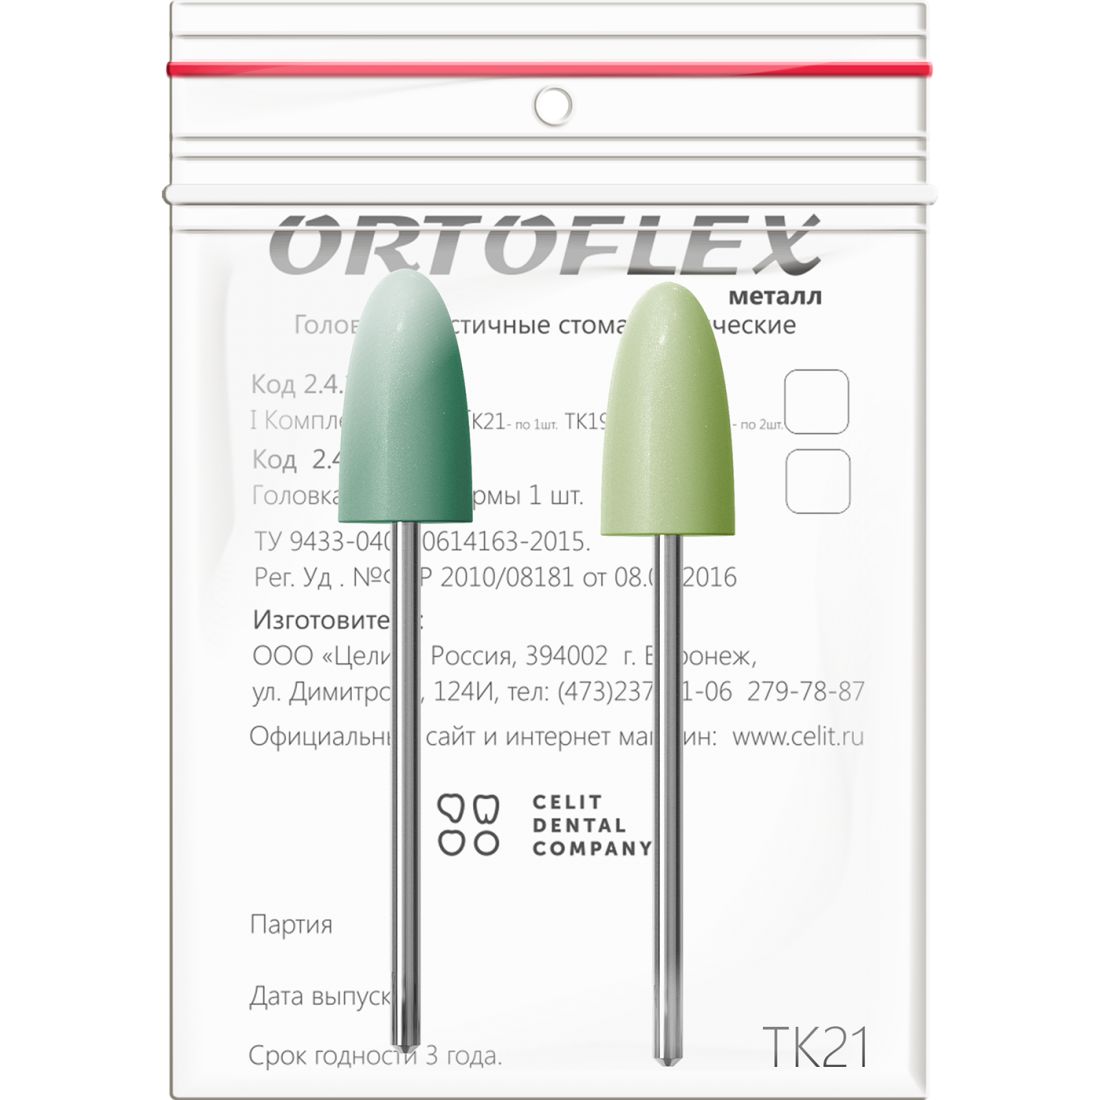 Ortoflex пластмасса ТК21, головки Ортофлекс для обработки пластмассы (2шт)